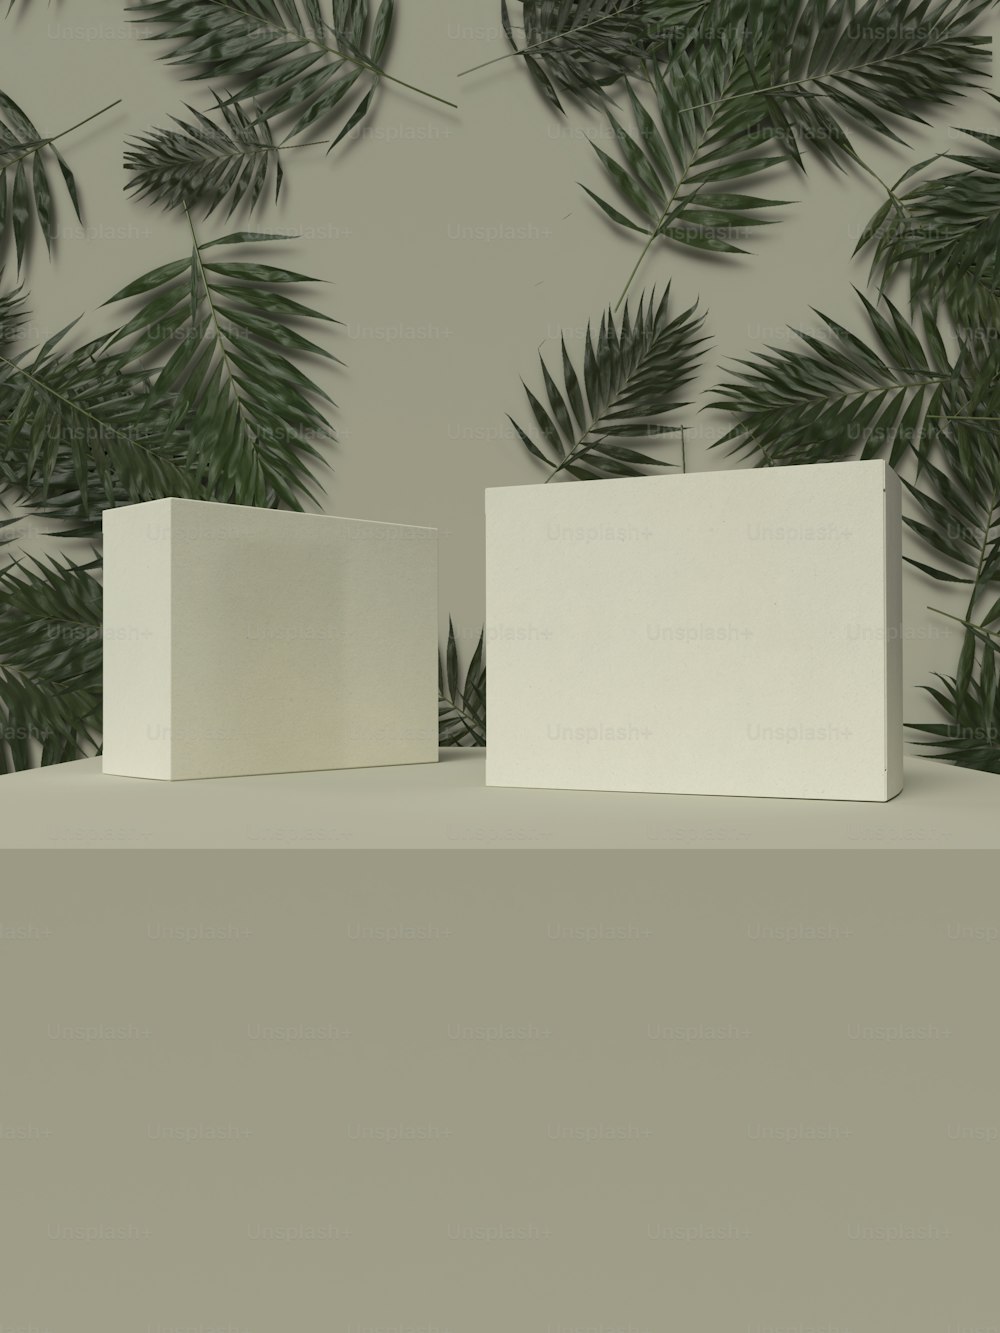 테이블 위에 놓인 두 개의 흰색 상자